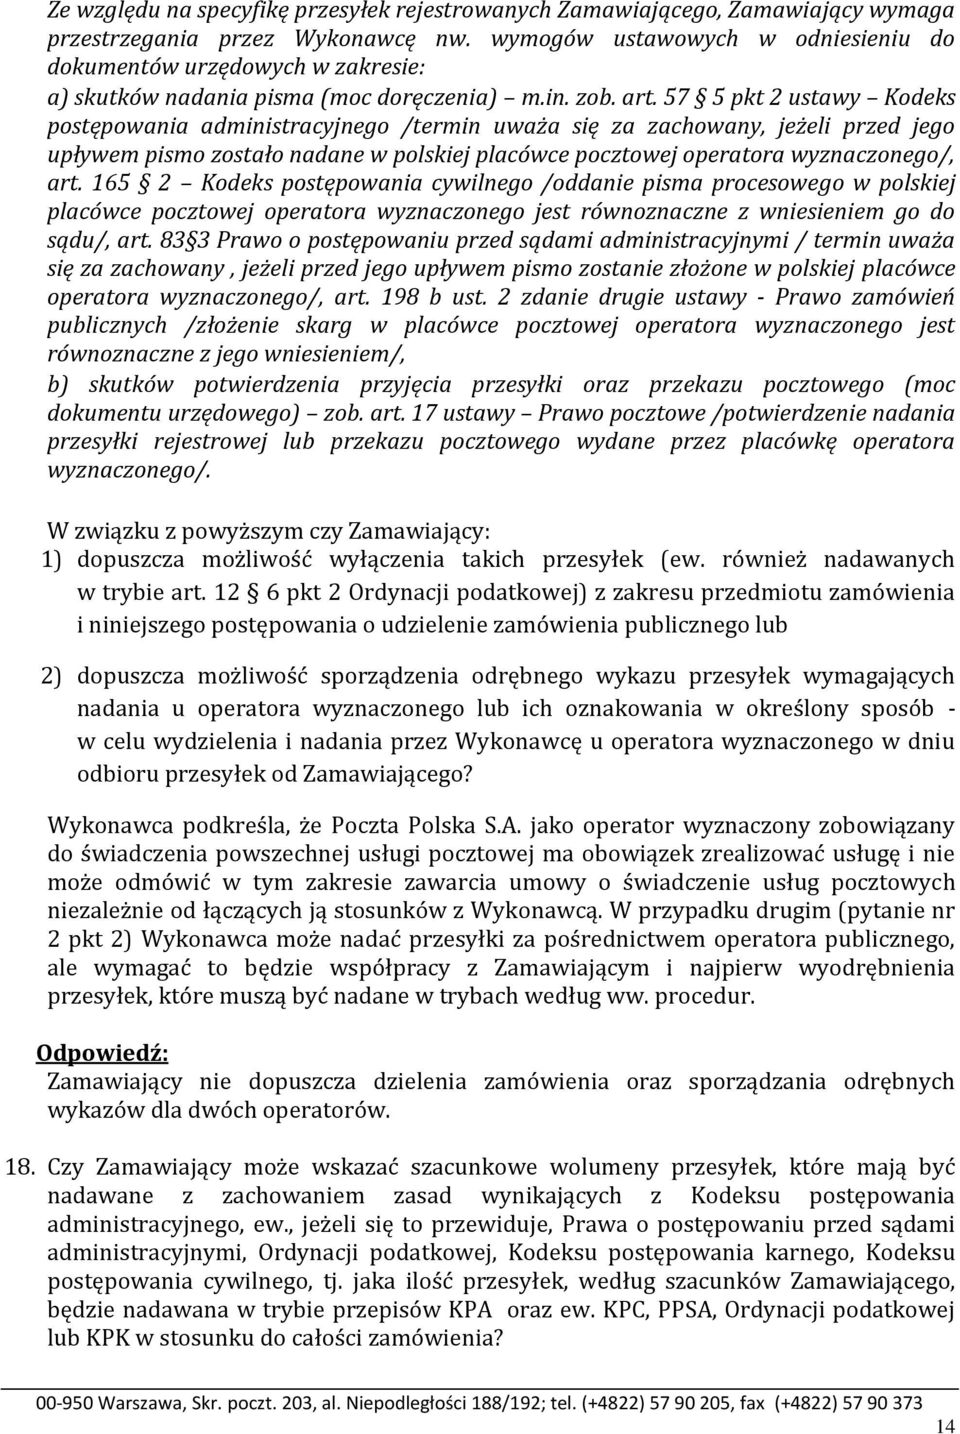 57 5 pkt 2 ustawy Kodeks postępowania administracyjnego /termin uważa się za zachowany, jeżeli przed jego upływem pismo zostało nadane w polskiej placówce pocztowej operatora wyznaczonego/, art.